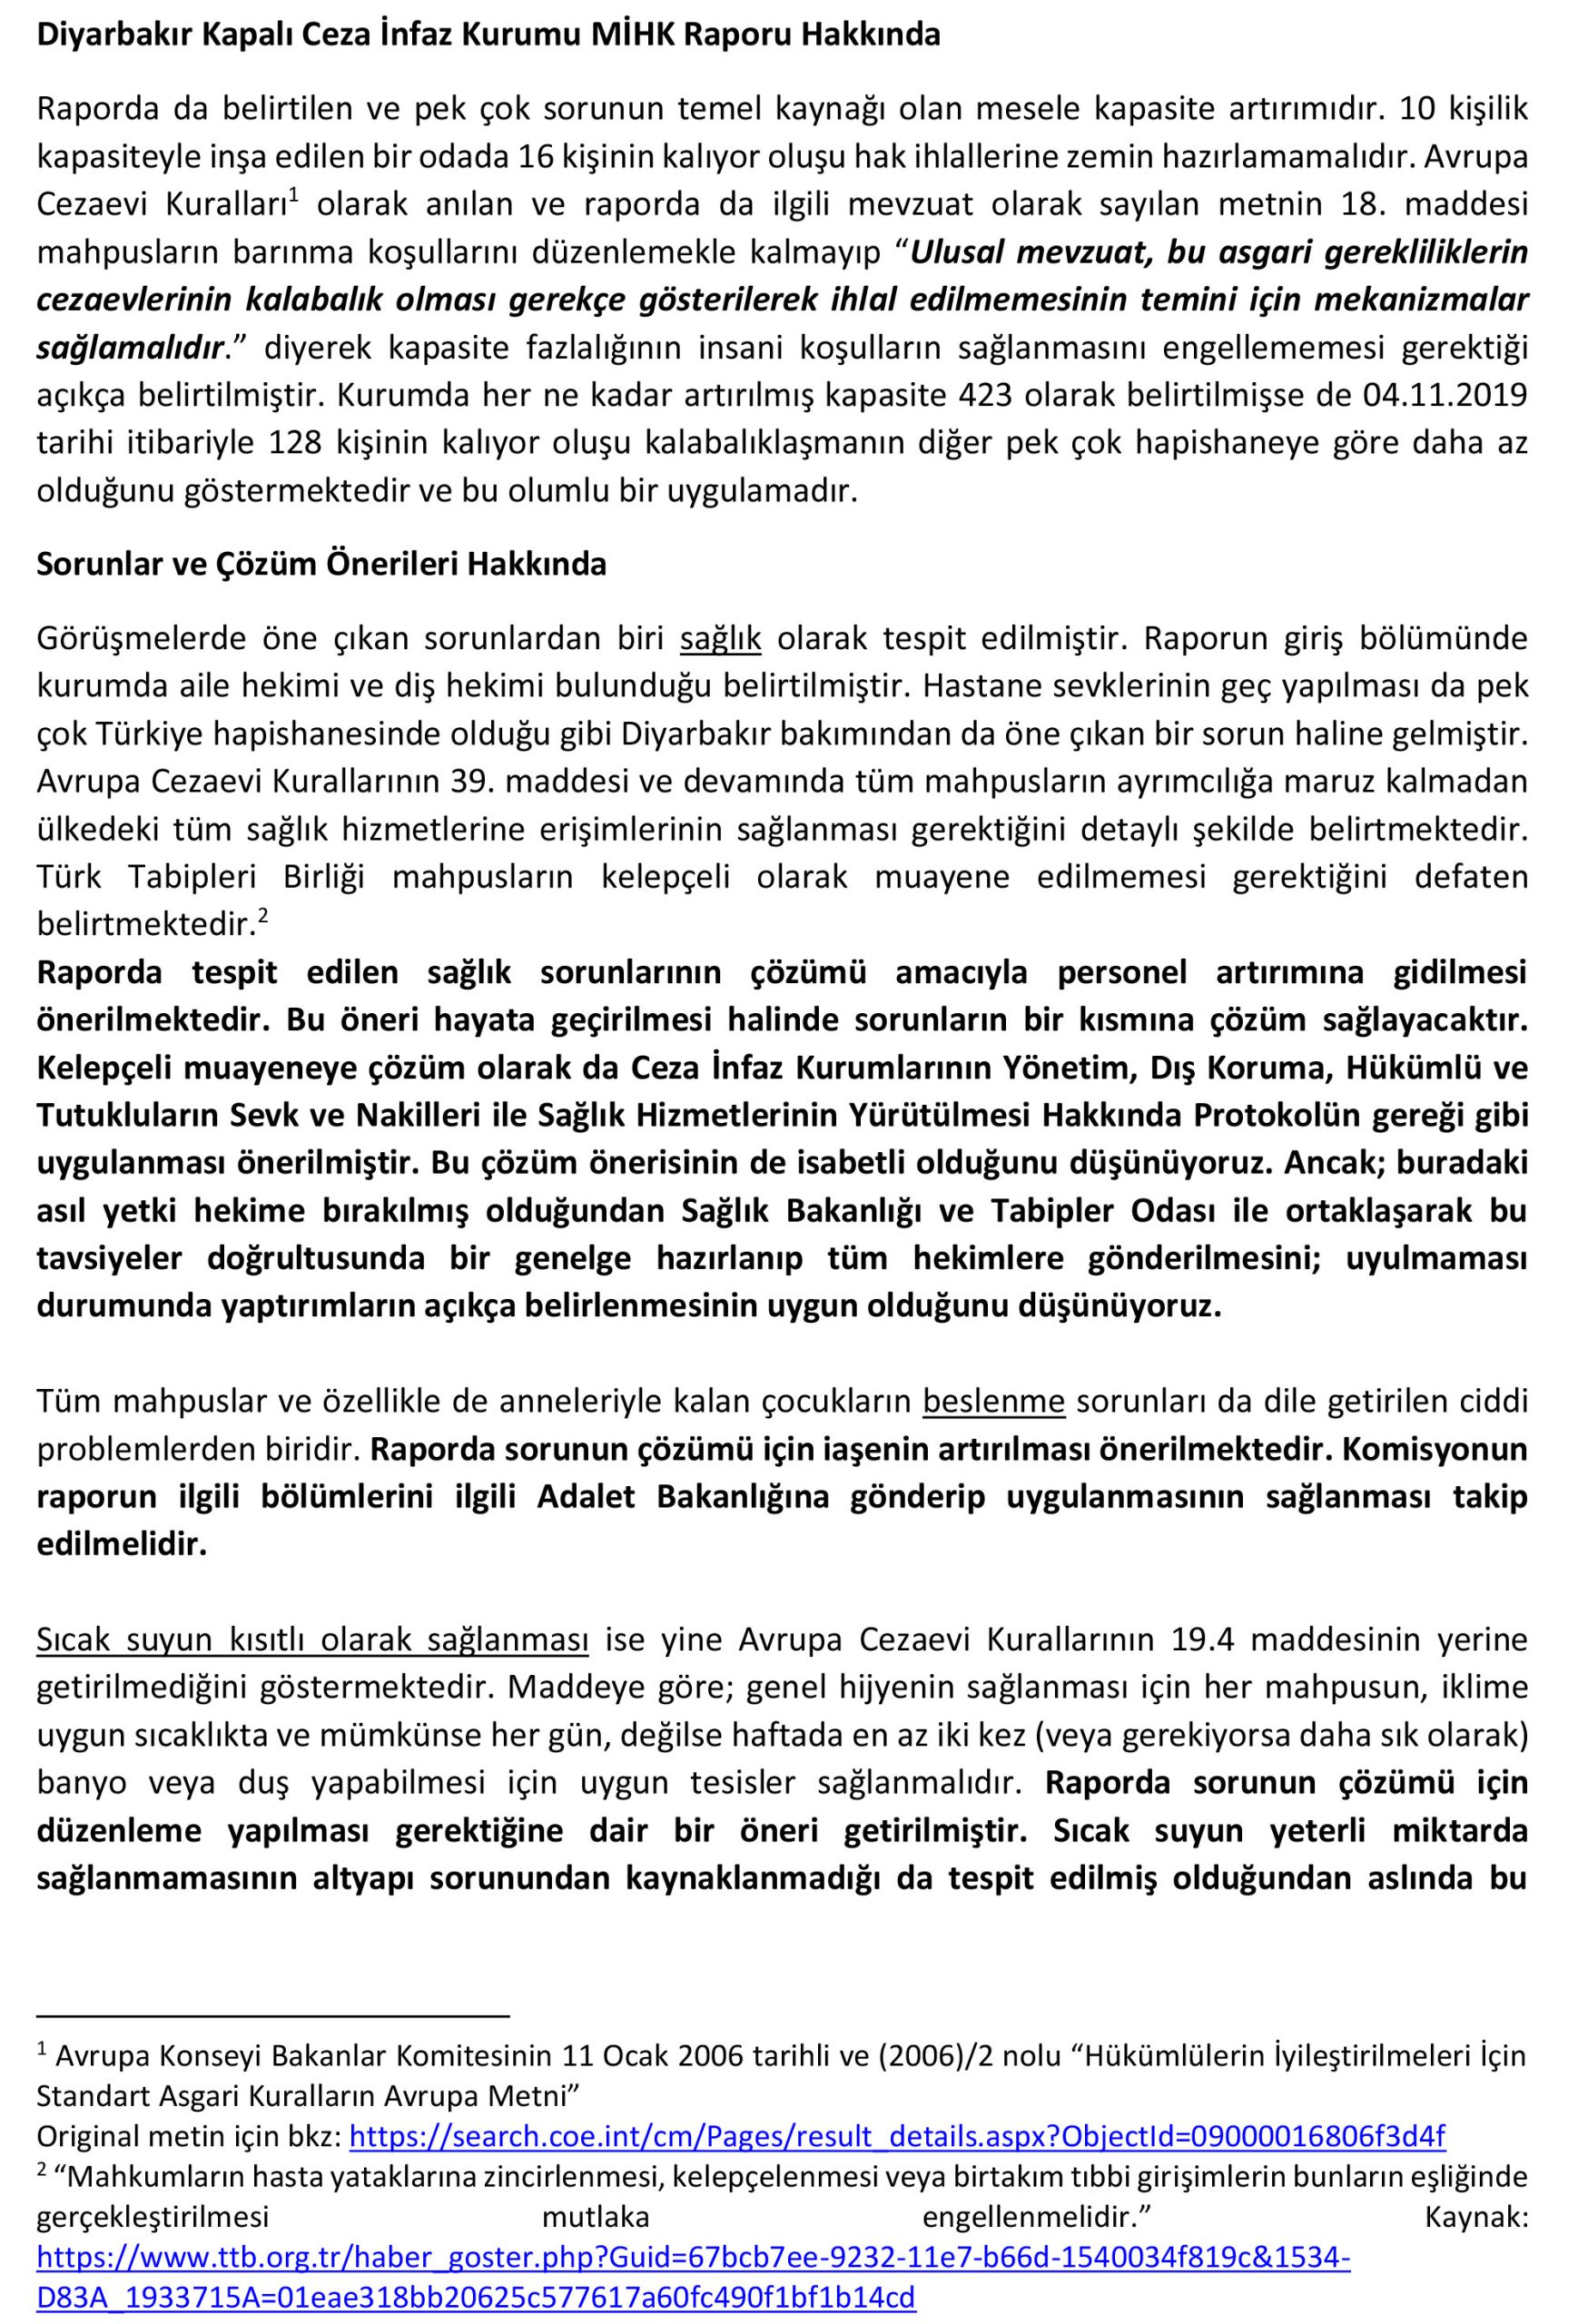 Diyarbakır Kapalı Ceza İnfaz Kurumu MİHK Raporu Hakkında